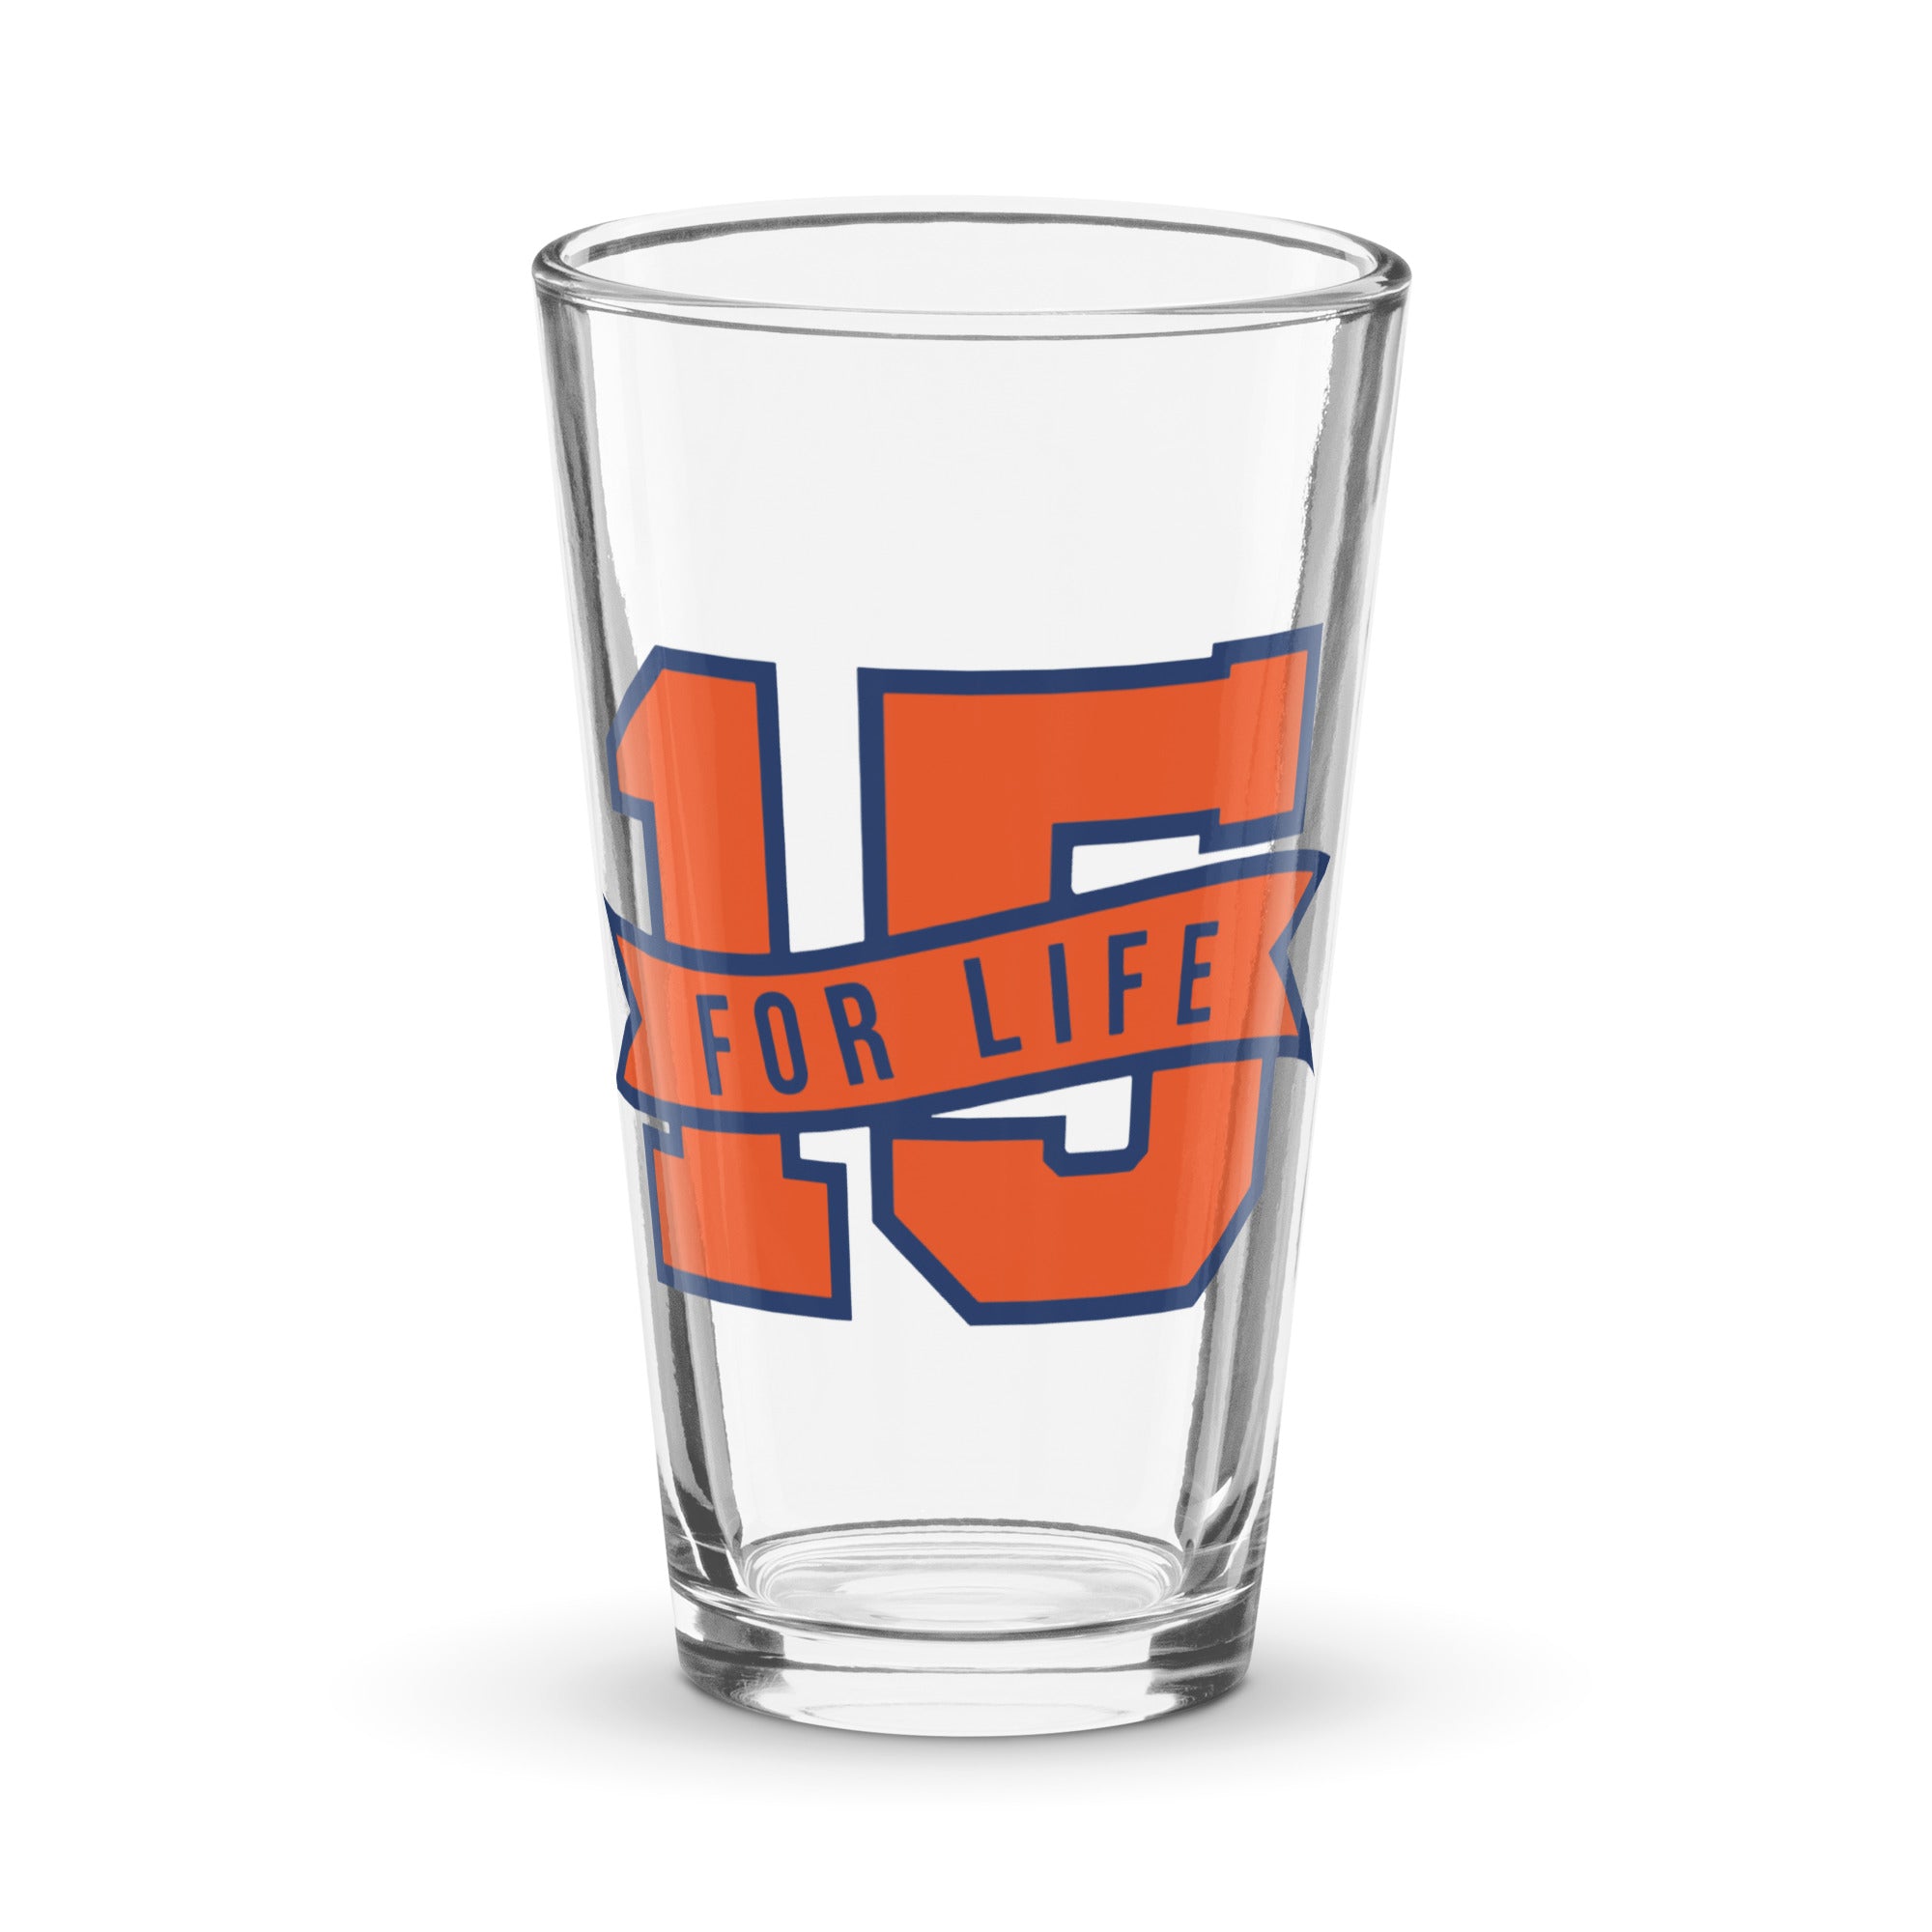 15 For Life Shaker pint glass